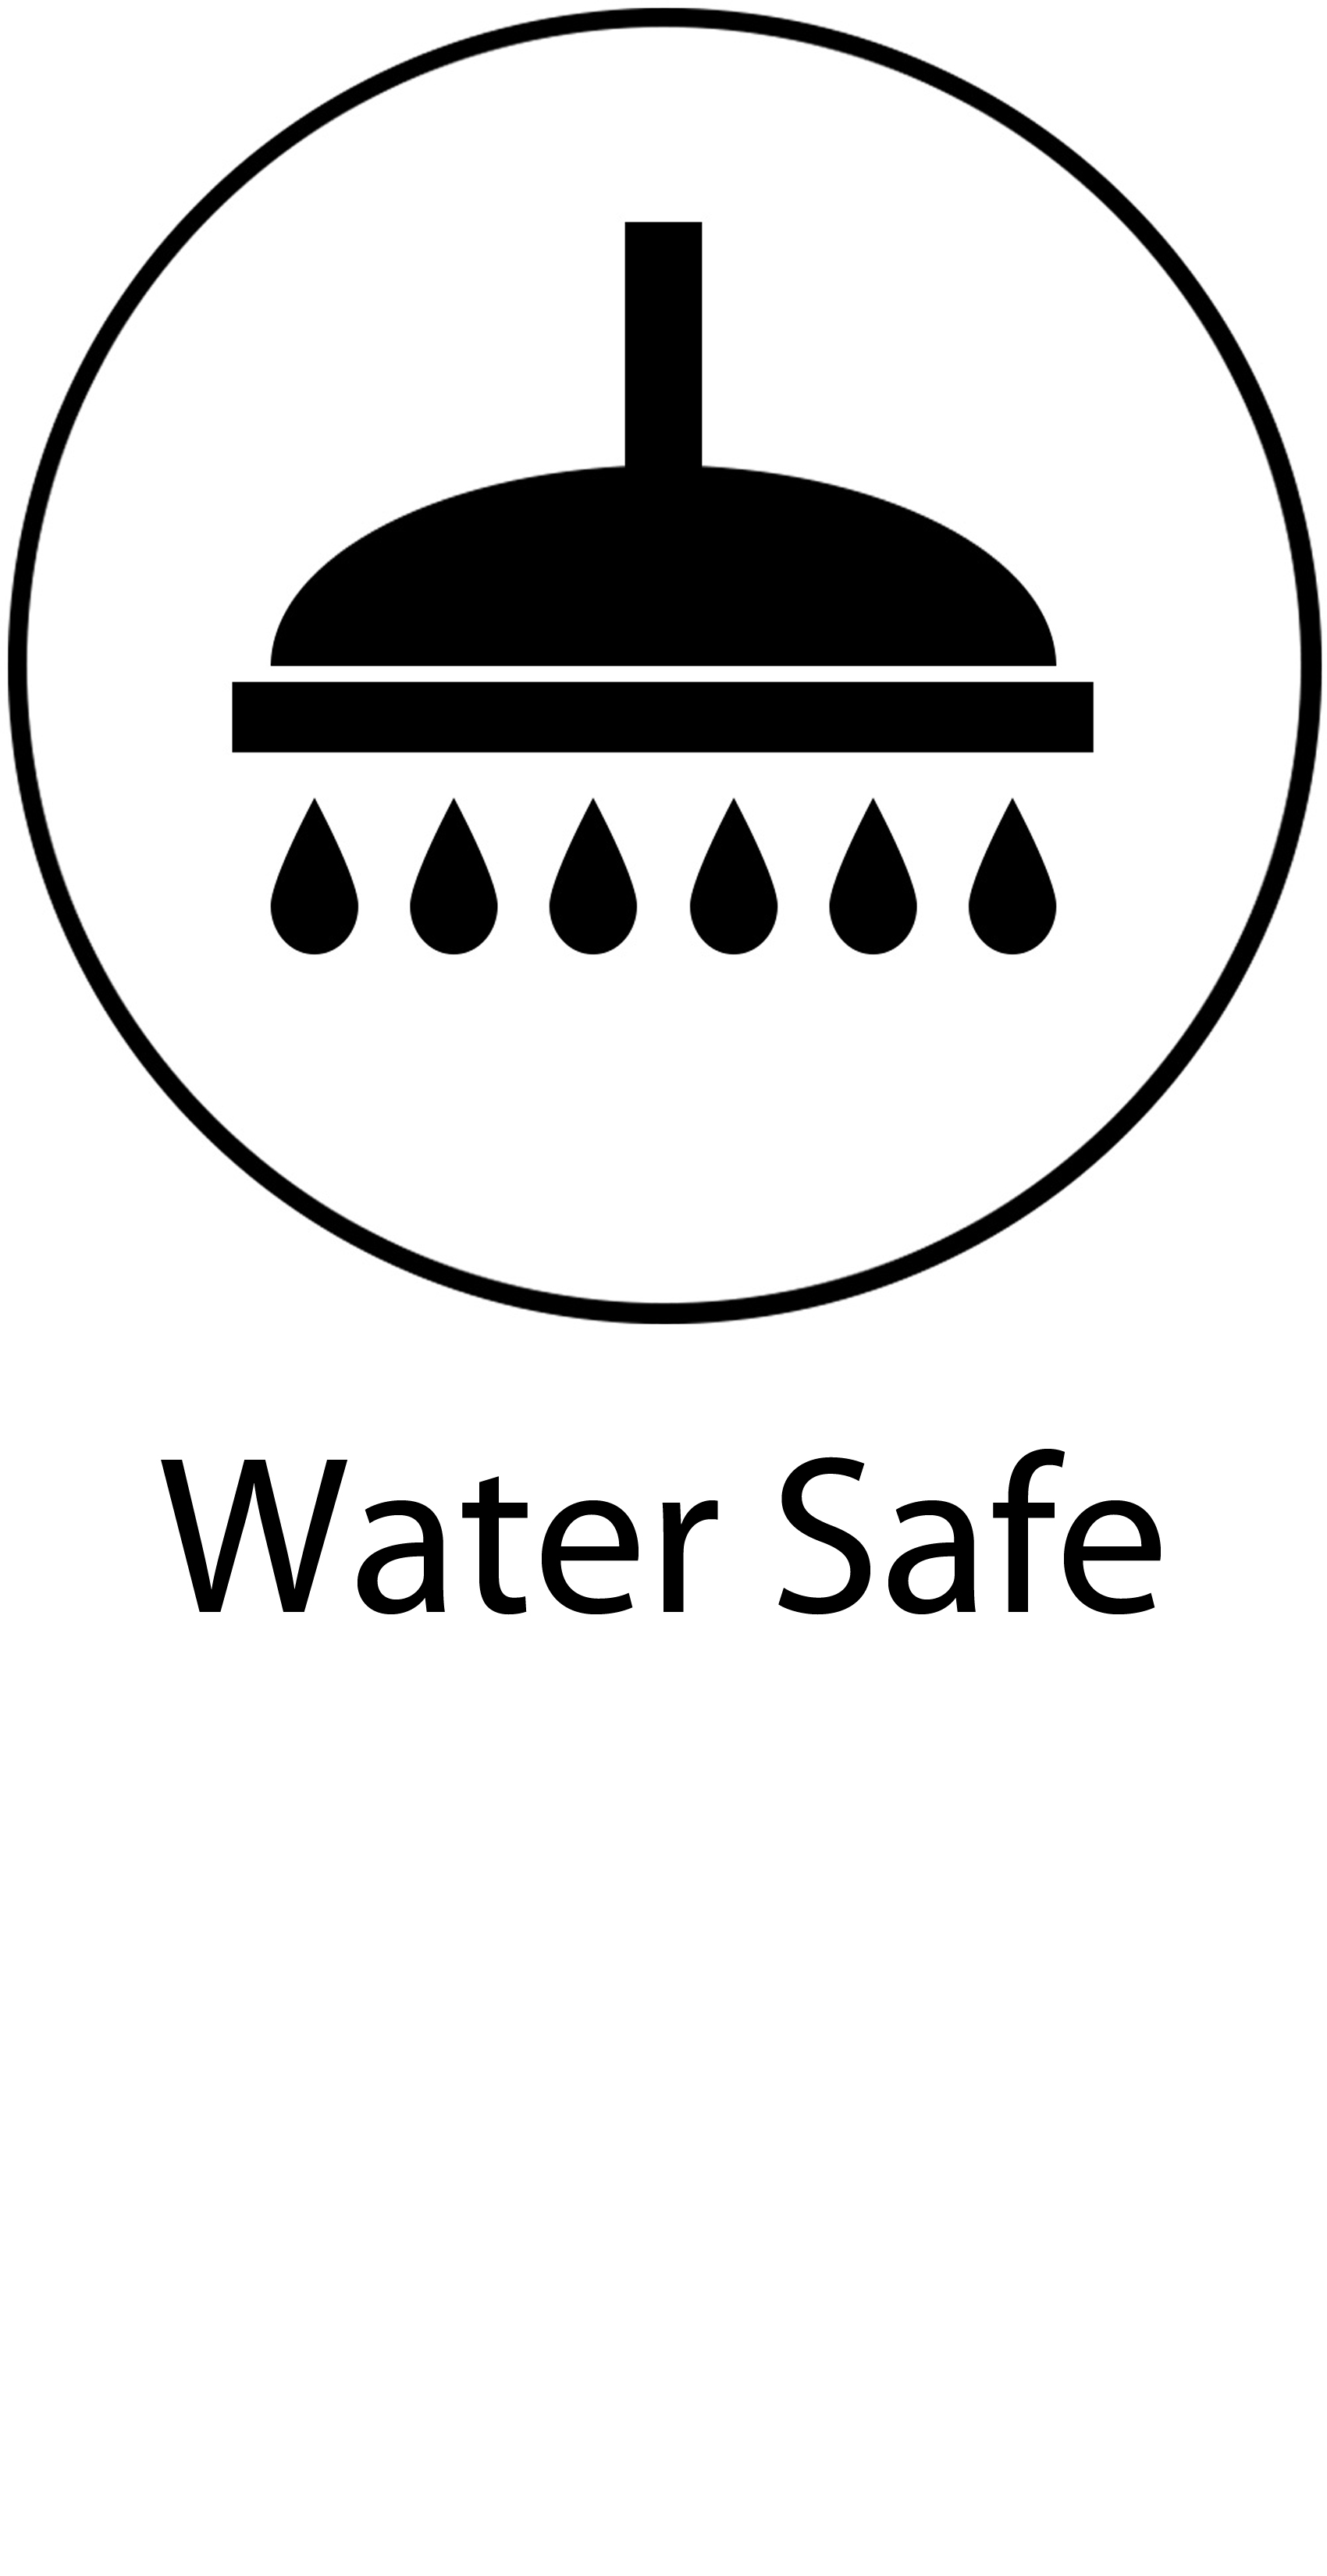 Water Safe.jpg